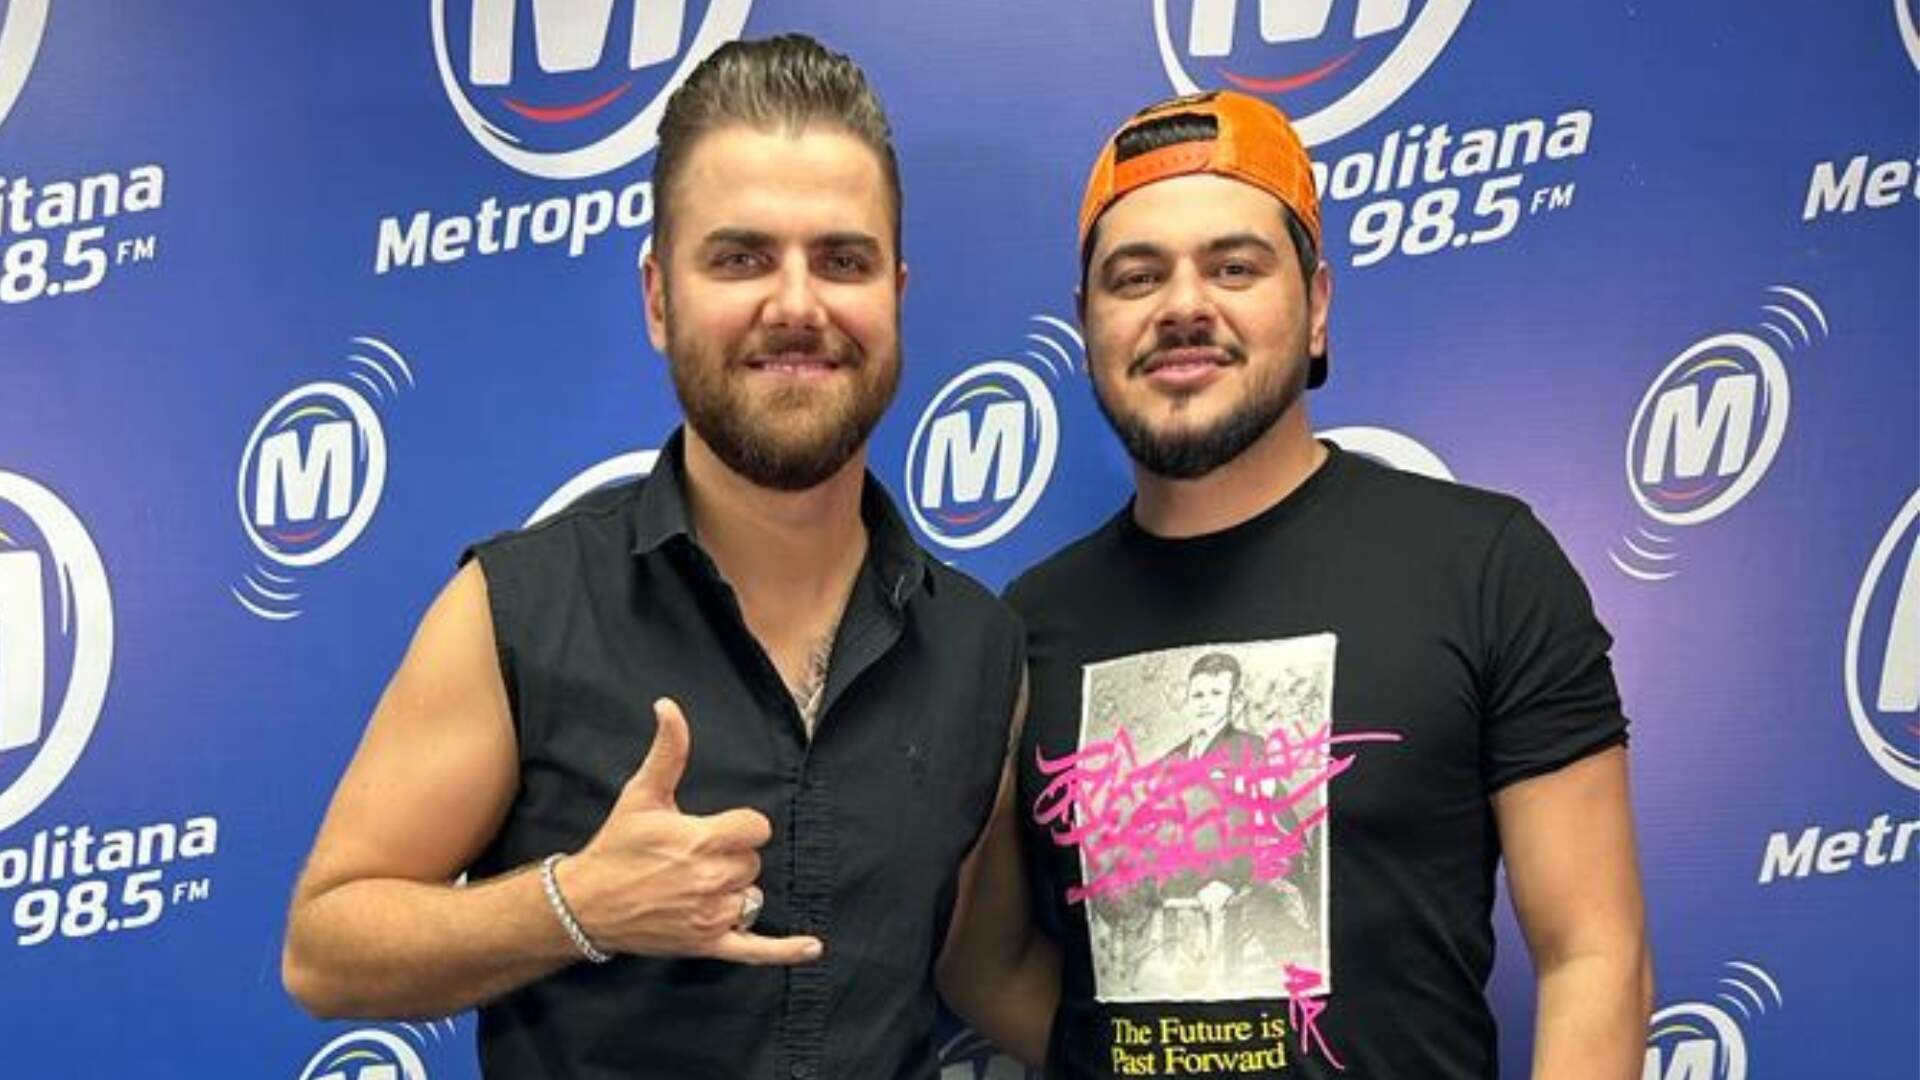 Exclusiva: Zé Neto e Cristiano falam sobre novo álbum e explicam história por trás de “Oi Balde” - Metropolitana FM